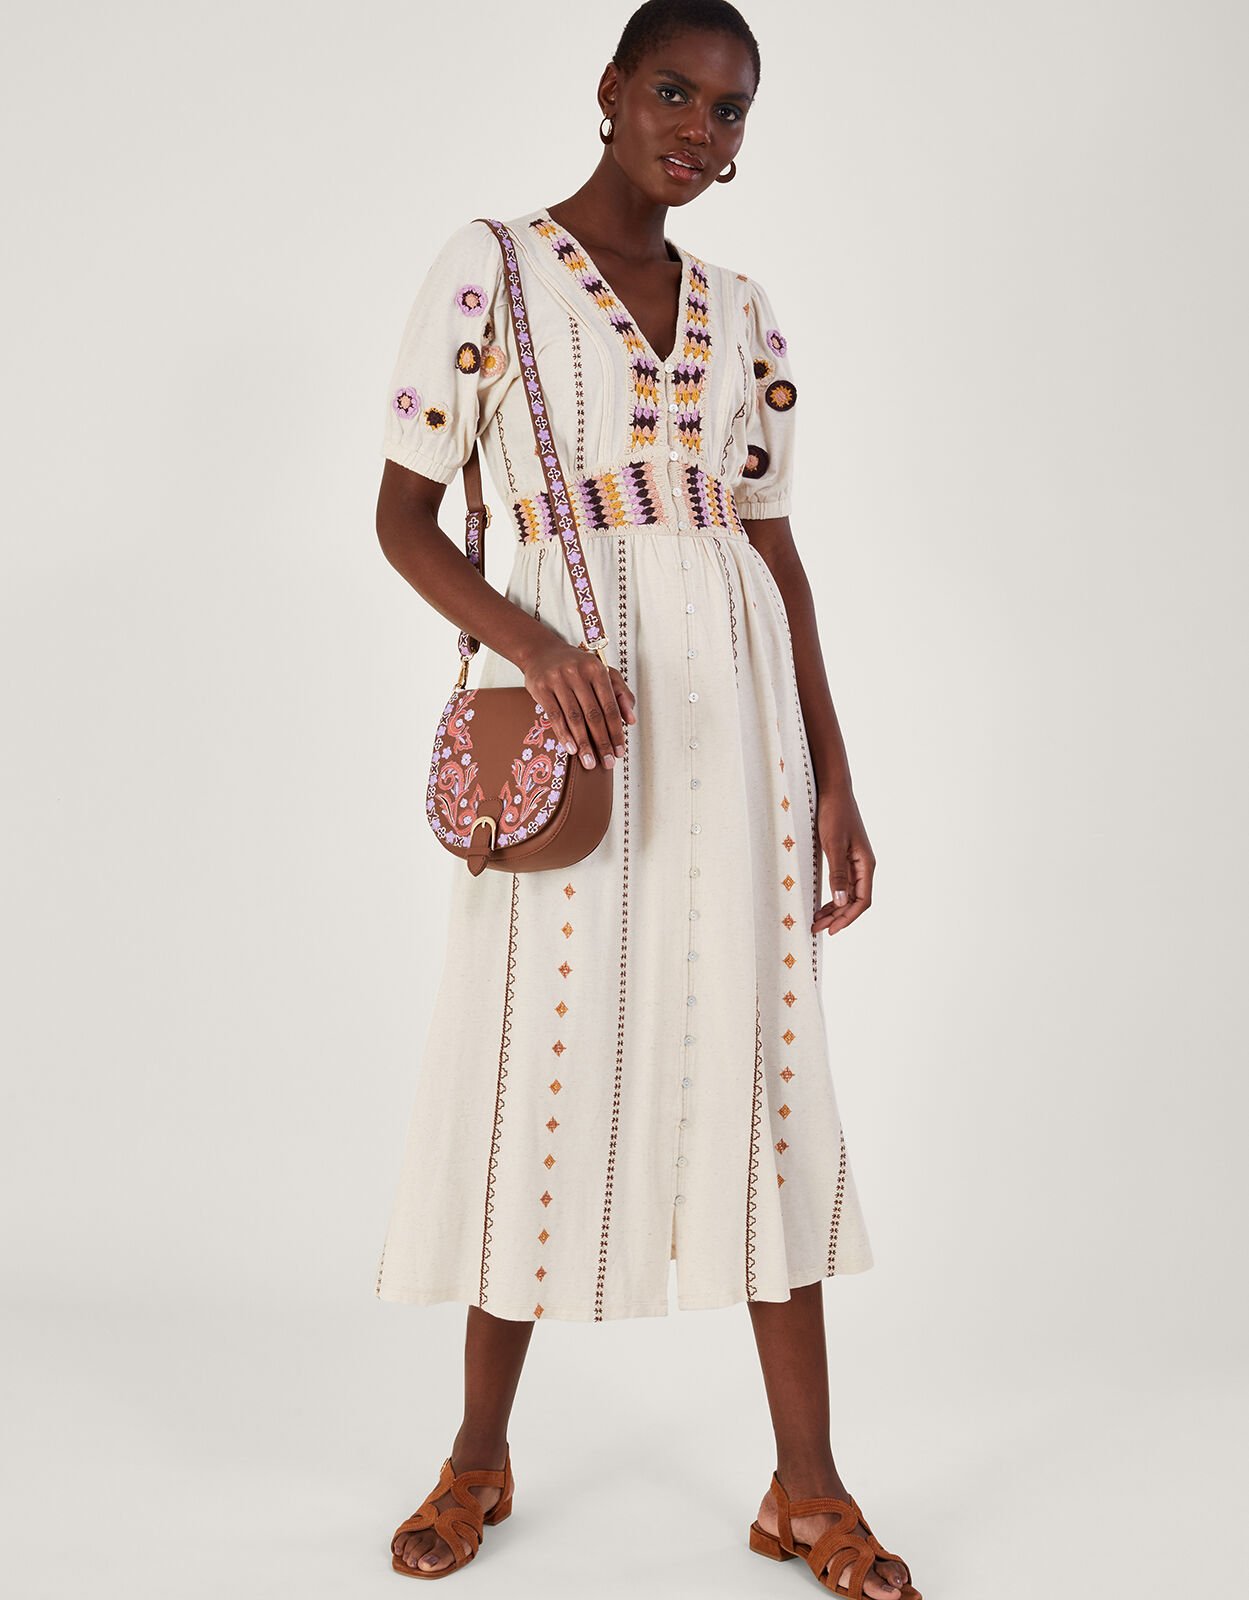 Linen-blend Crochet Summer Dress